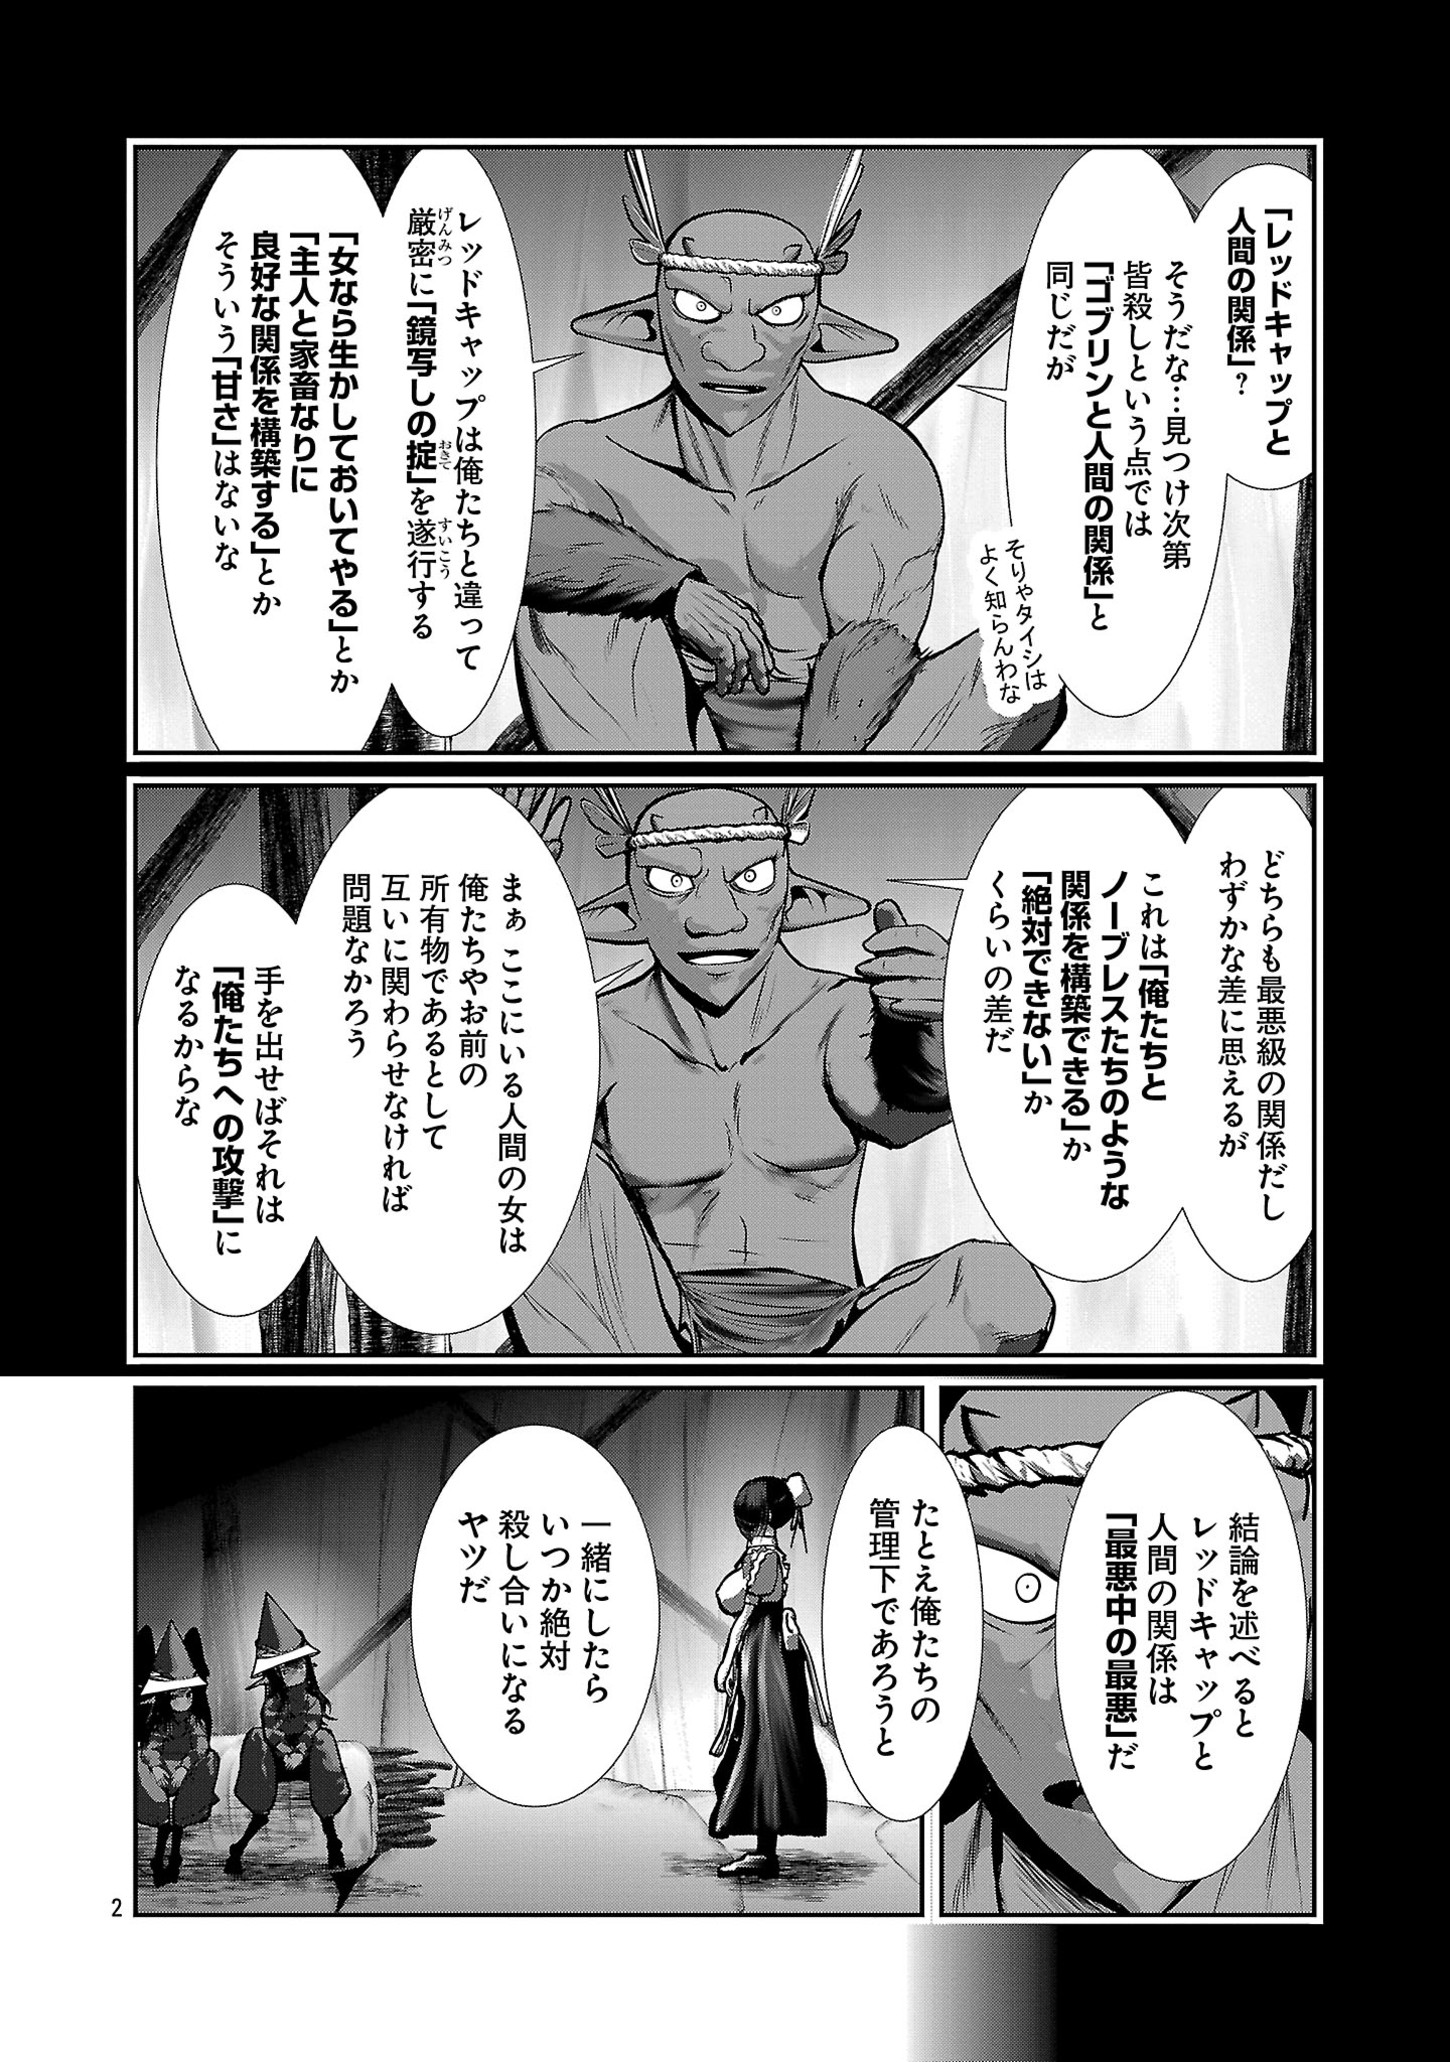 Kagakuteki ni Sonzai shiuru Creature Musume no Kansatsu Nisshi - Chapter 83 - Page 2